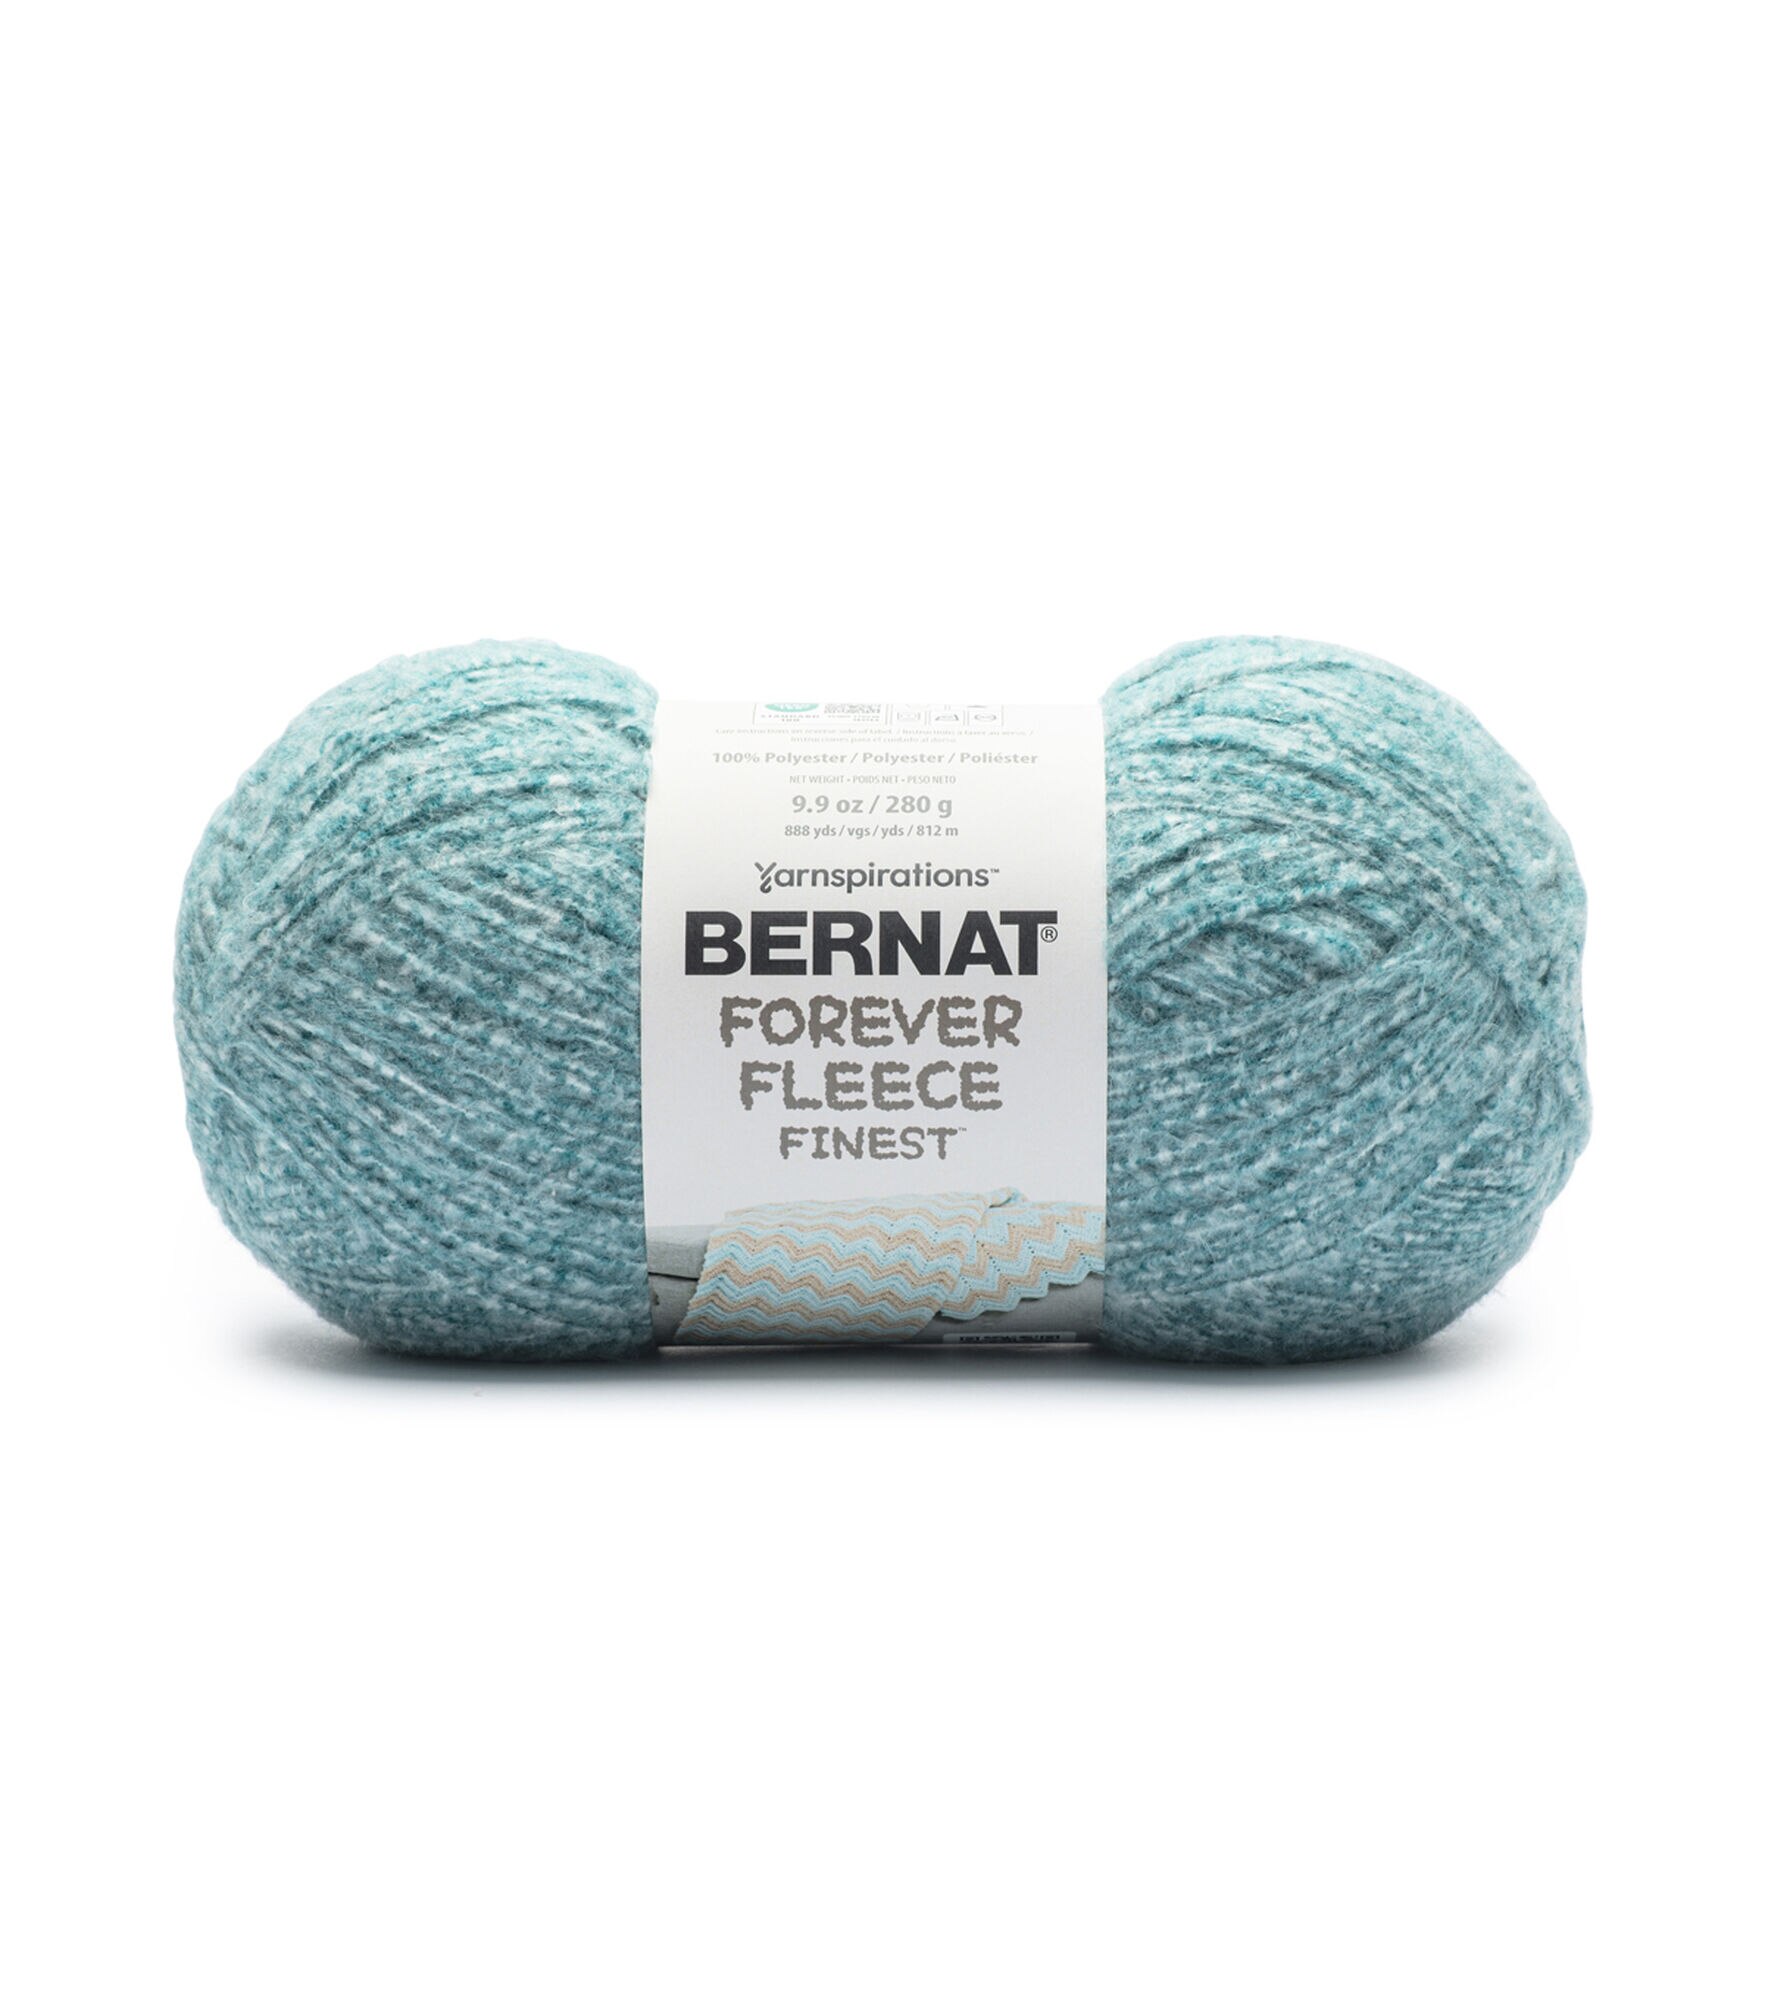 Bernat Forever Fleece Finest 888yds Worsted Polyester Yarn, Deap Teal Heather, hi-res